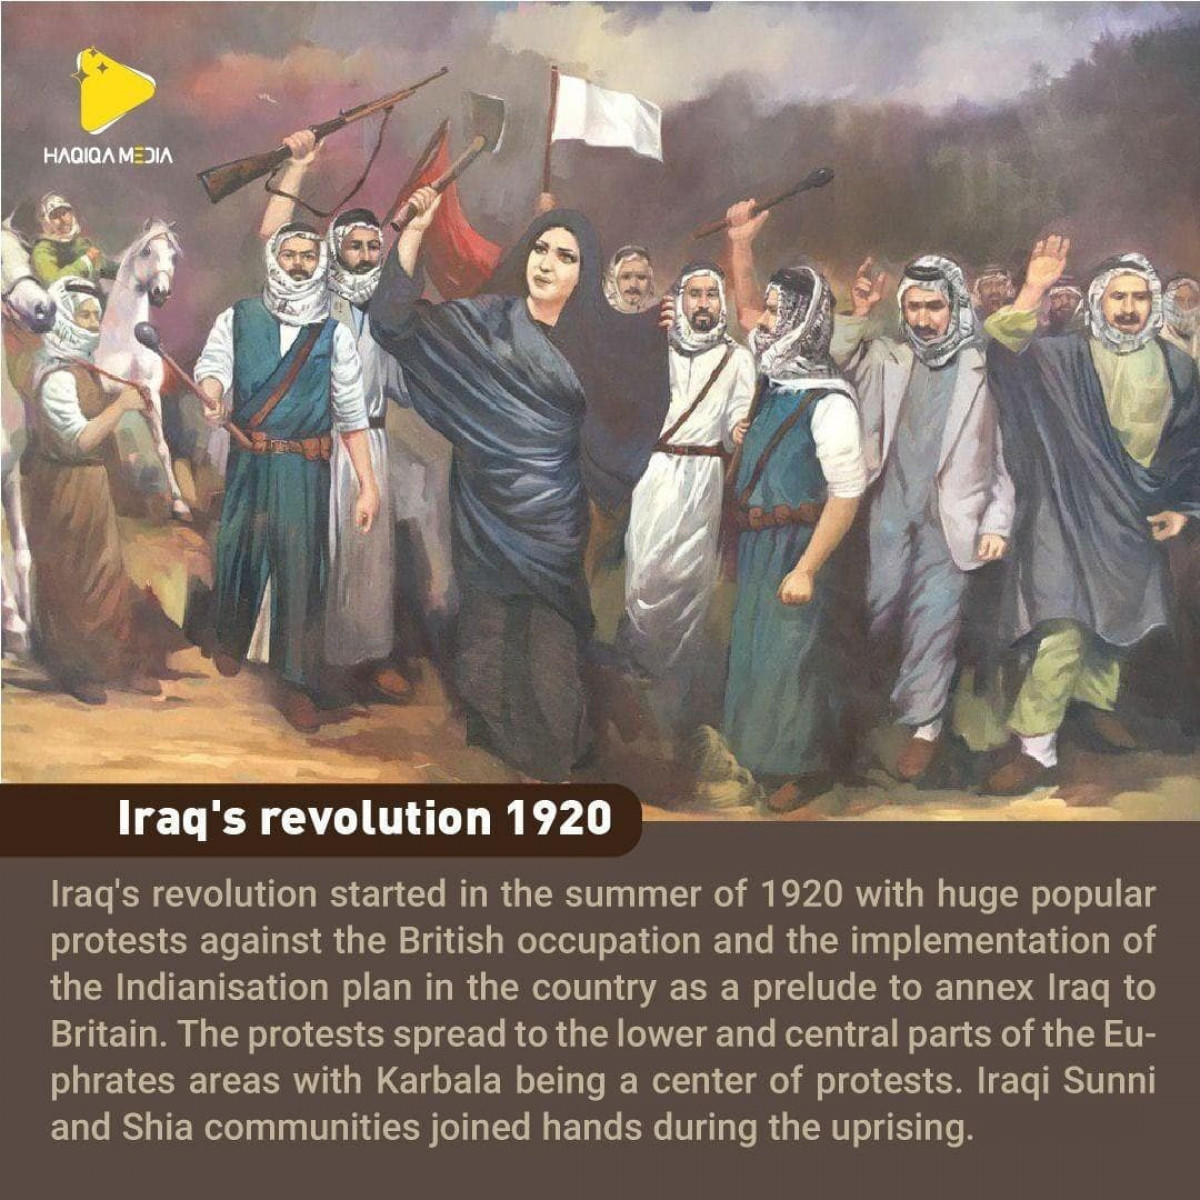 Iraq's revolution